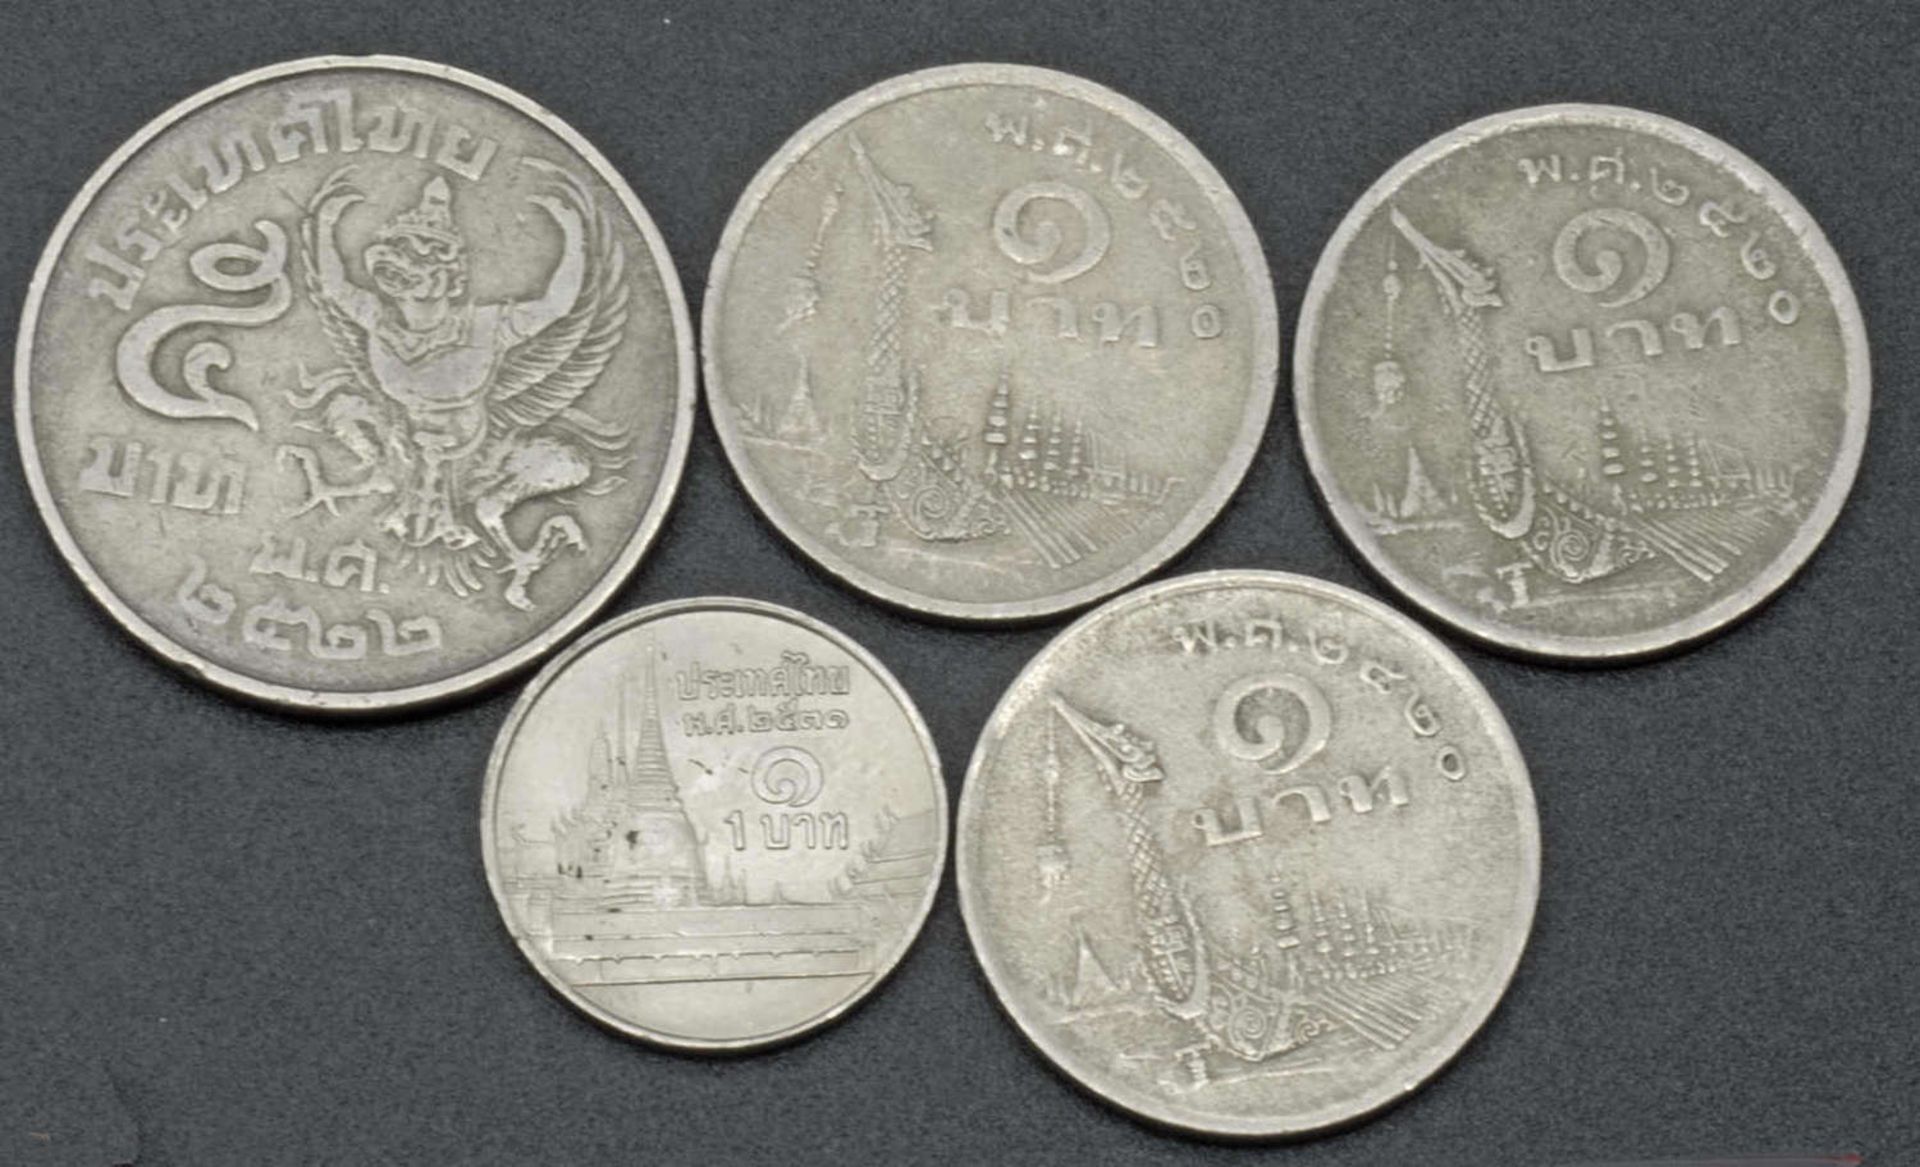 kleines Münzlot Thailand. Bitte besichtigensmall coin slot Thailand. Please visit - Image 2 of 2